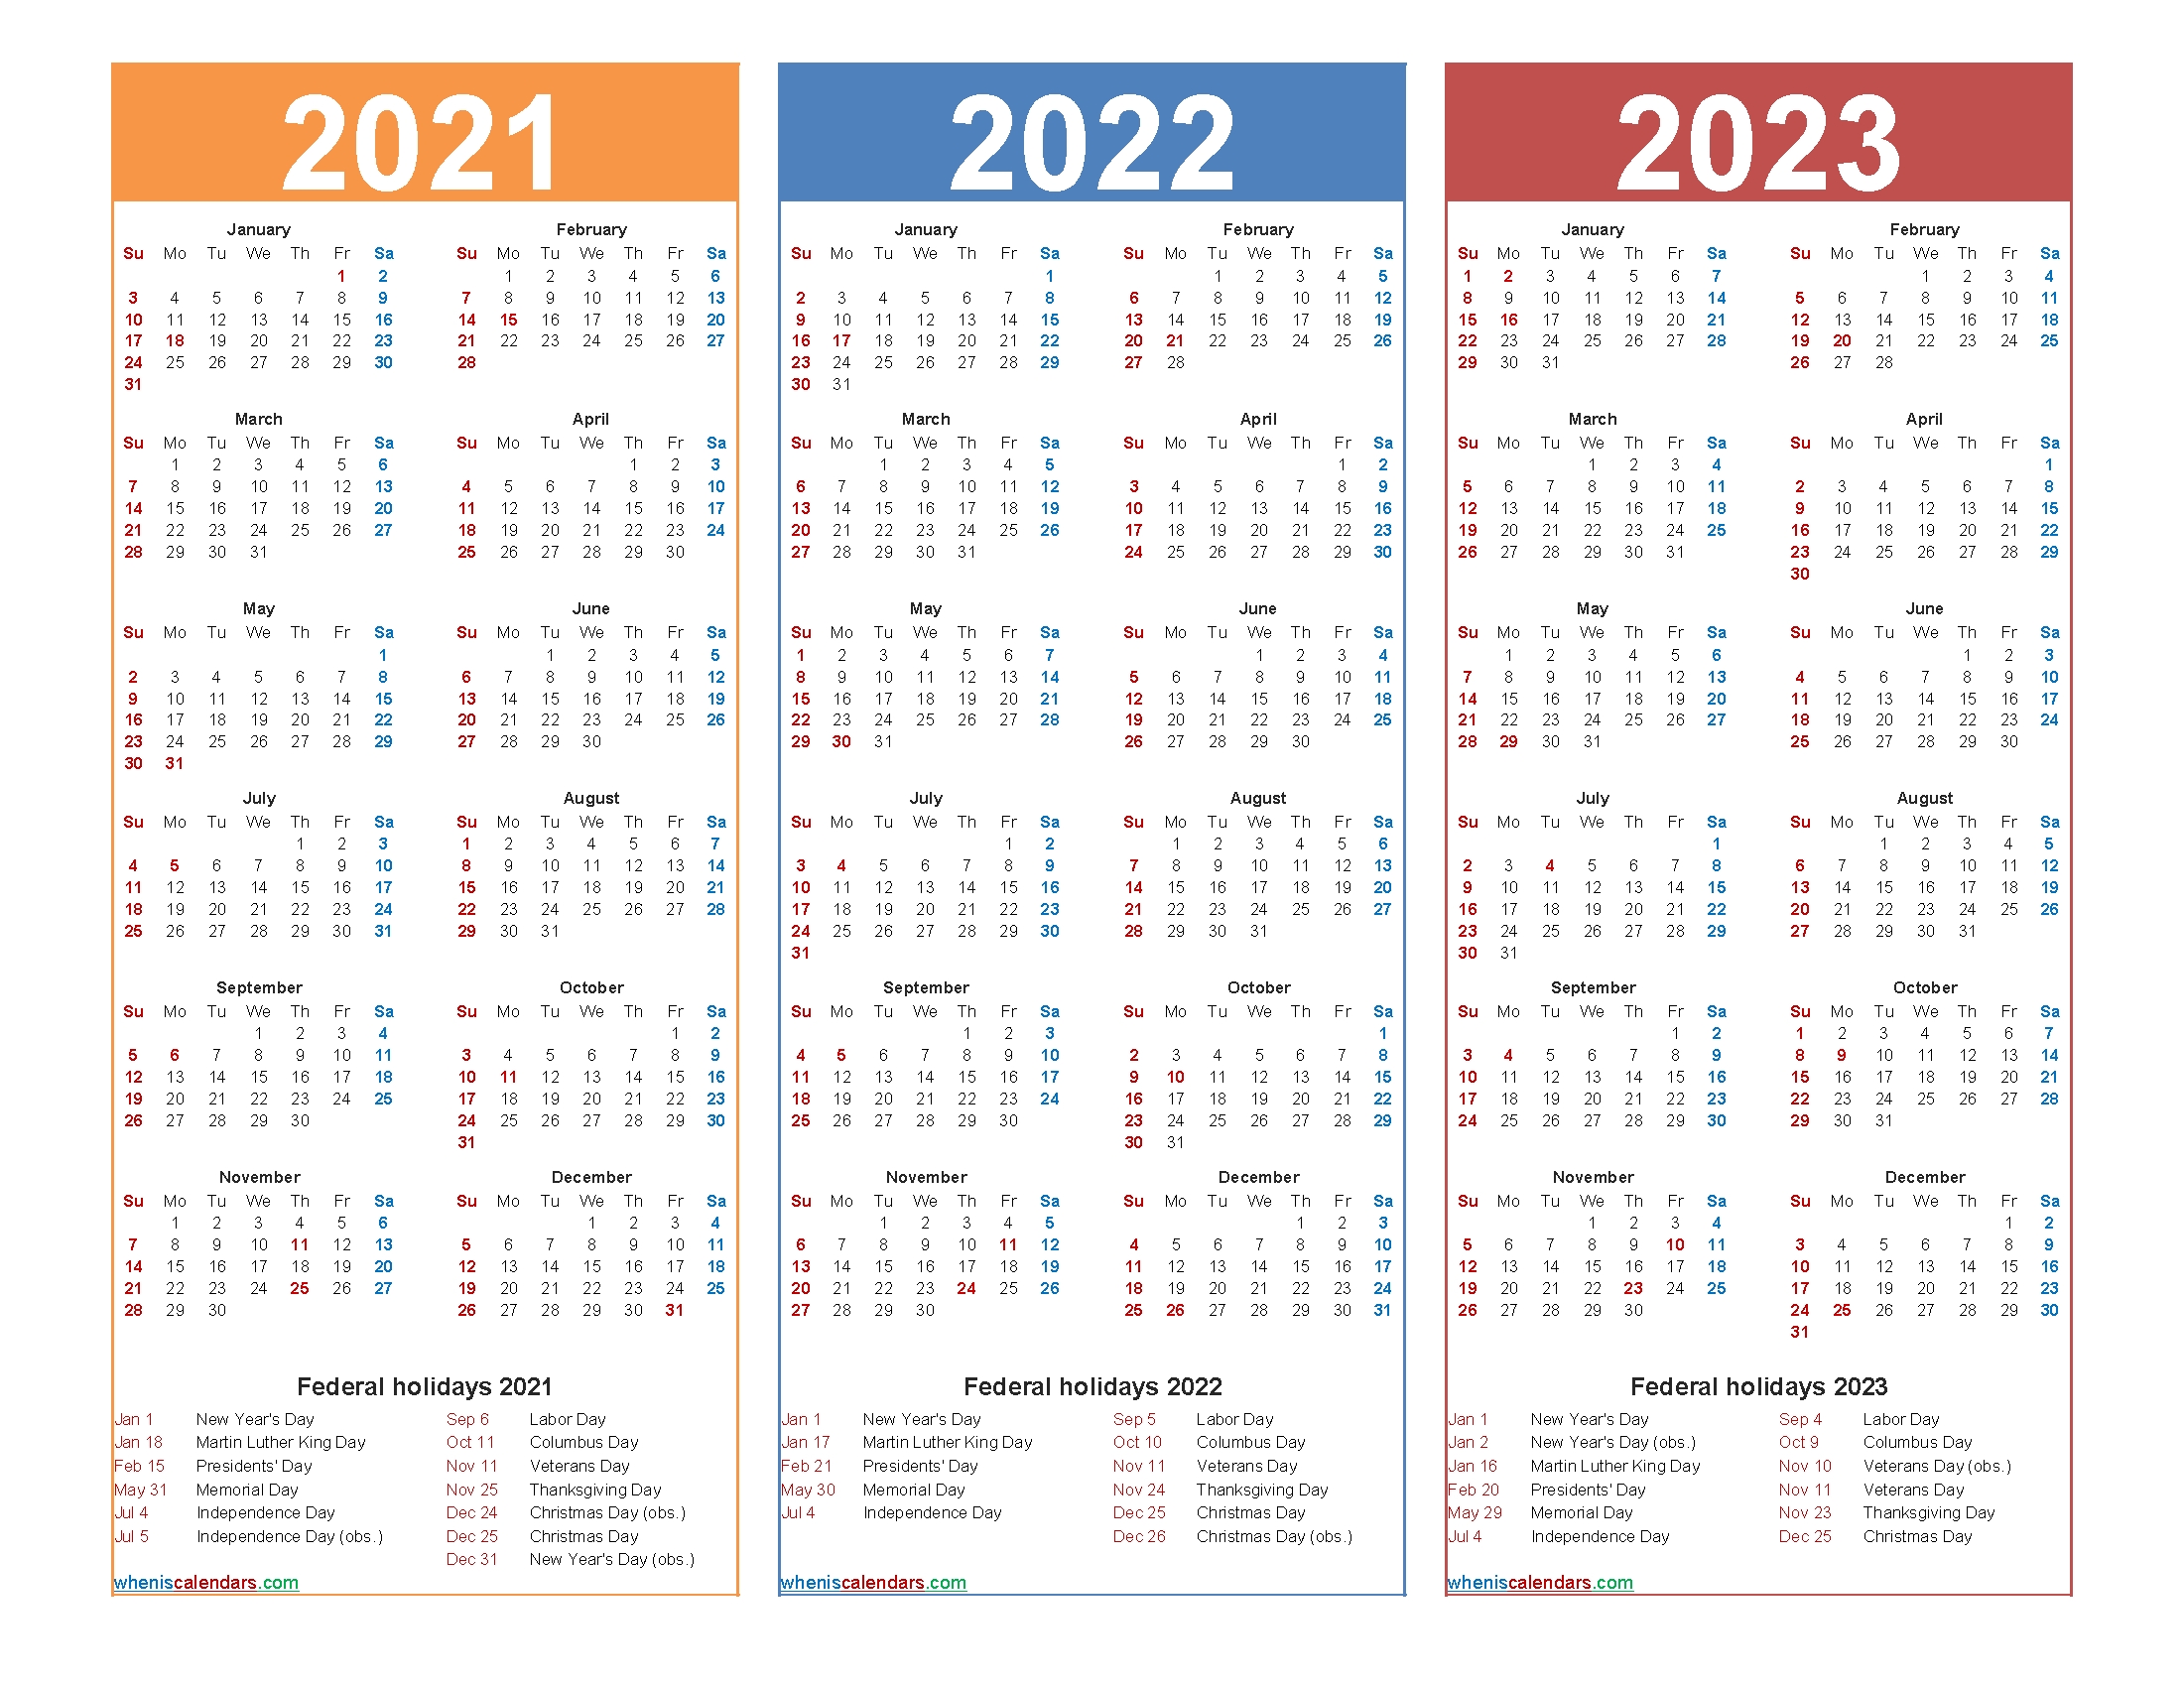 Catch Calendar For 2022 & 2023